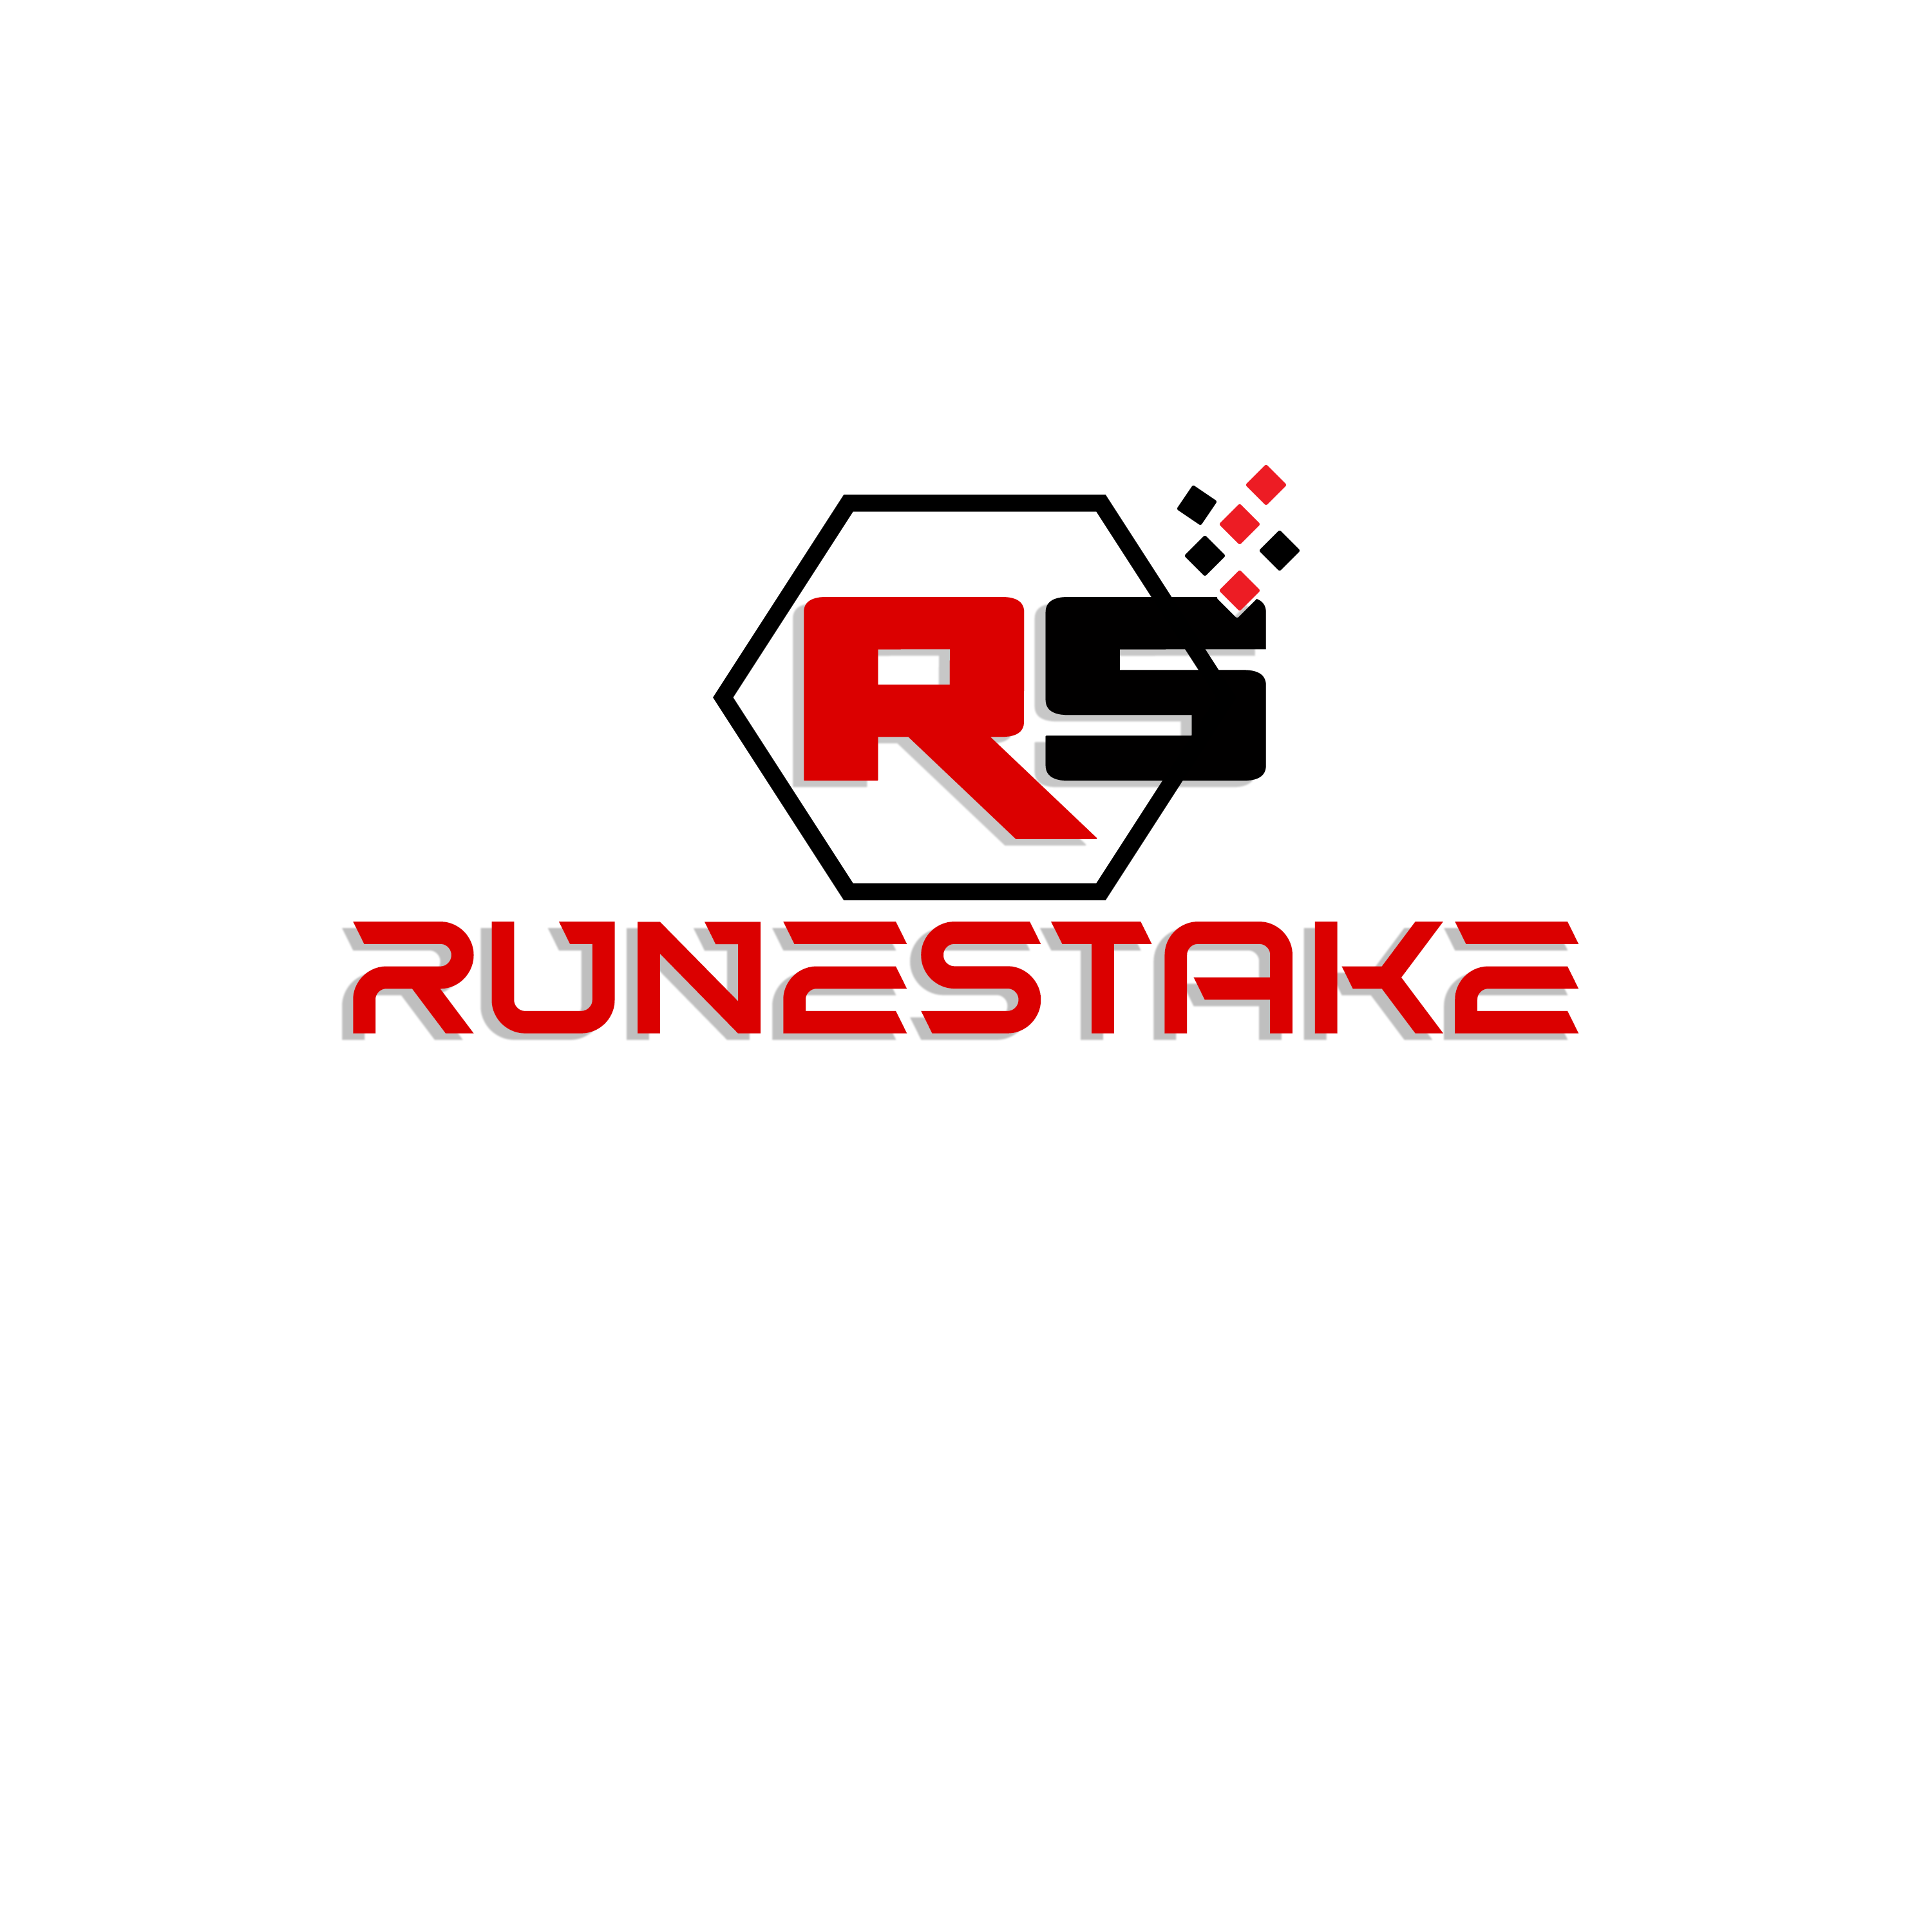 Runestake logo